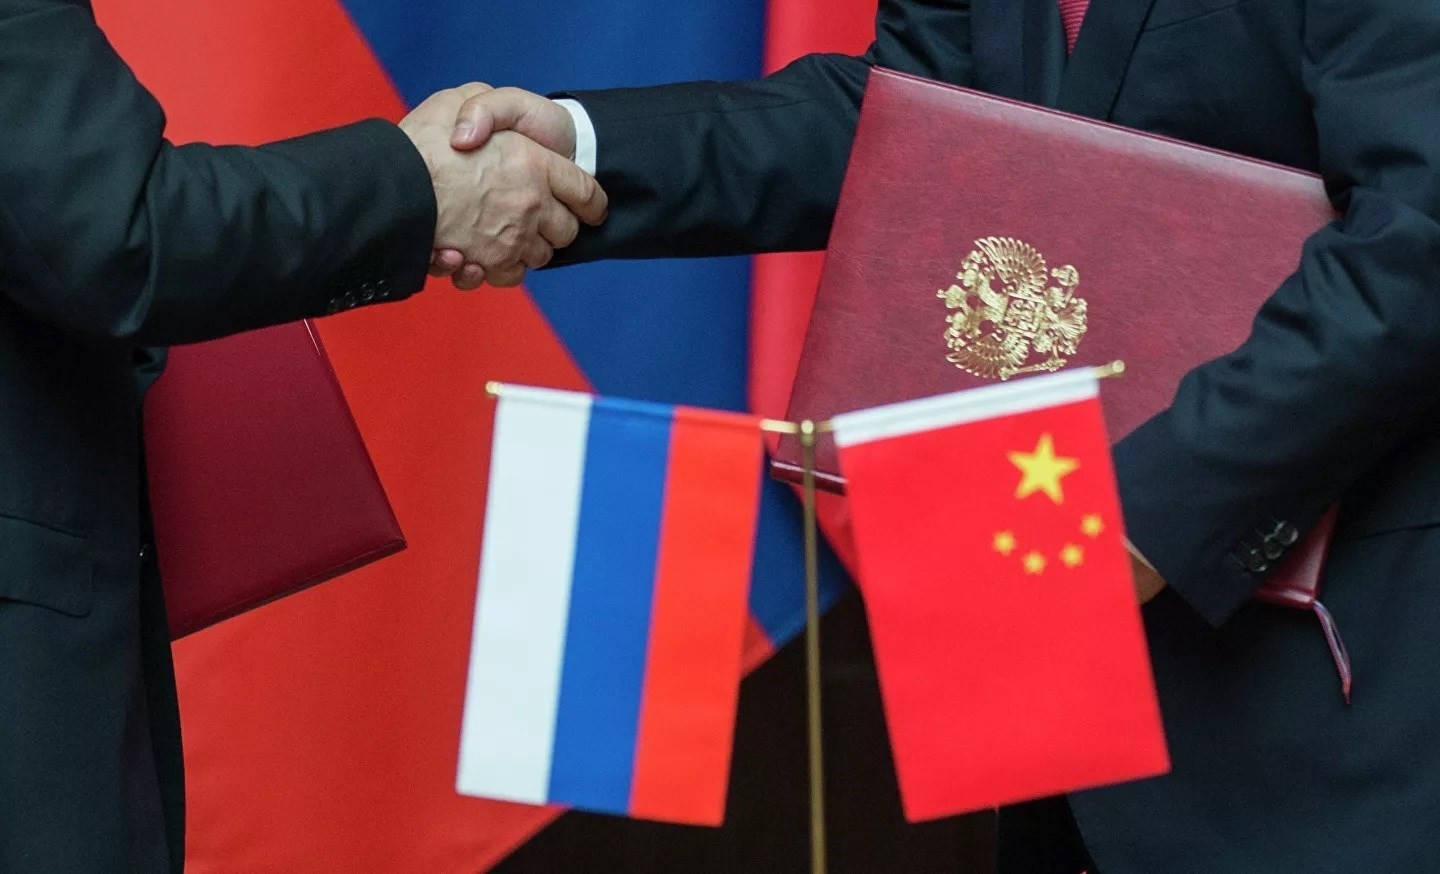 أكدت وزارة الدفاع الصينية على استعدادها التام للعمل مع الجيش الروسي من أجل الدفاع المشترك عن العدالة الدولية.